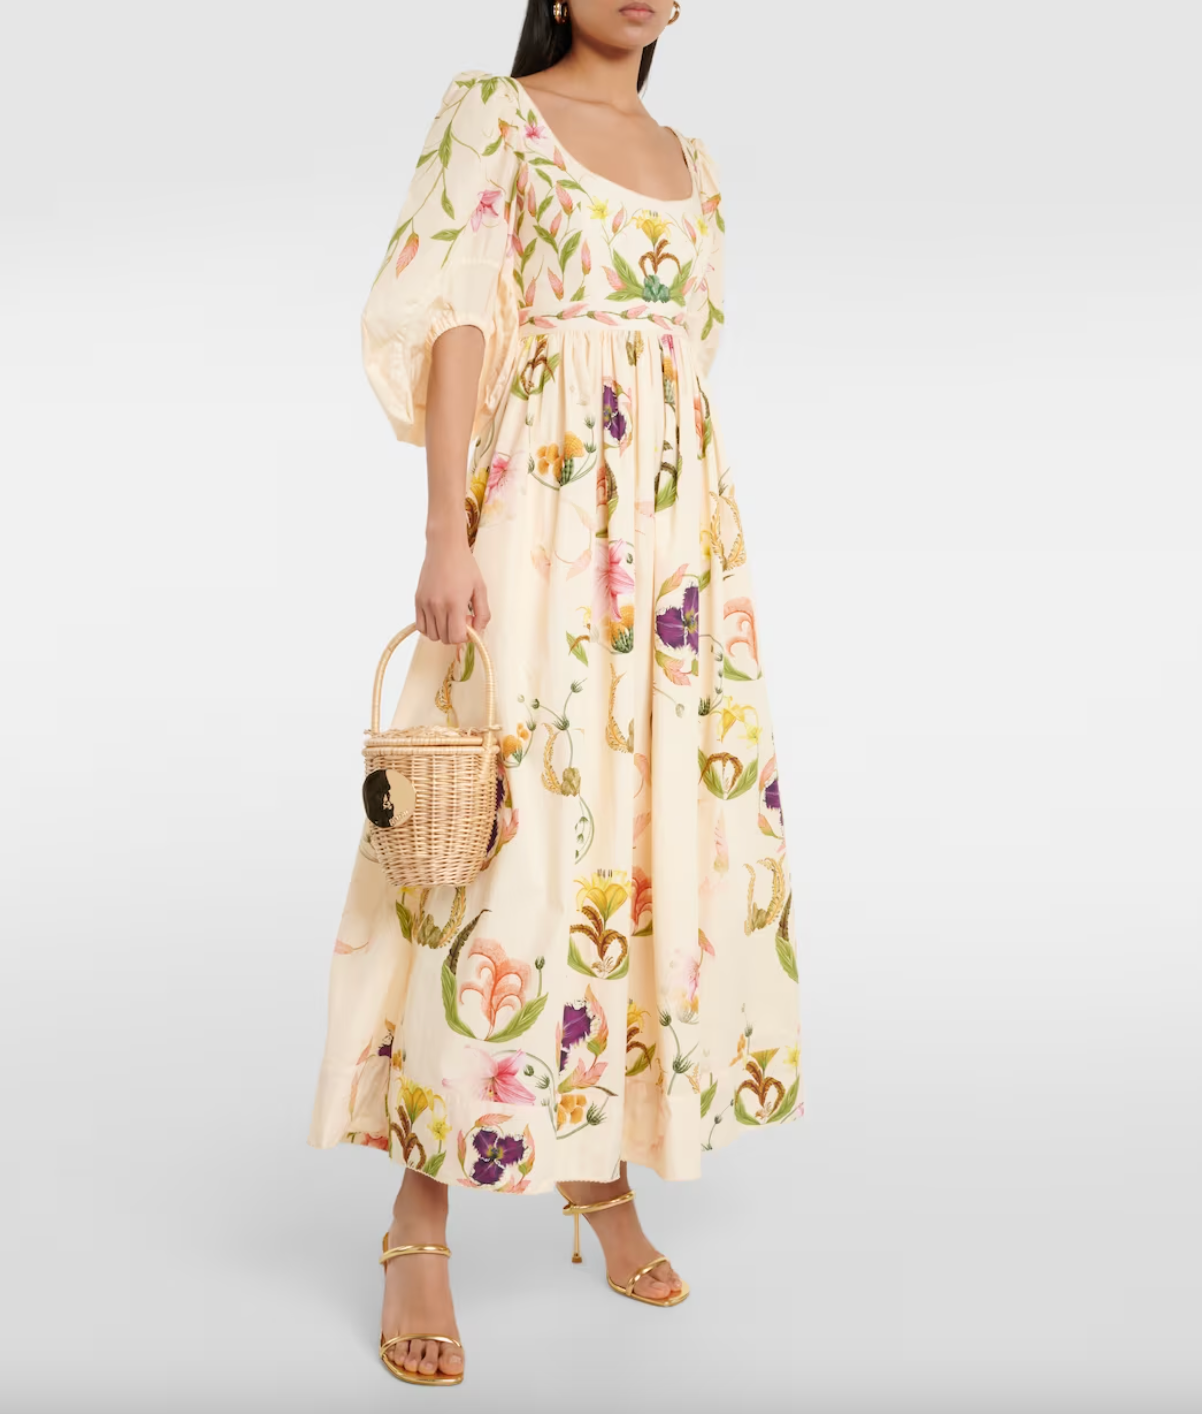 el vestido de invitada de rocío crusset lo tiene todo: es de flores, lleva capa y se puede llevar con alpargatas